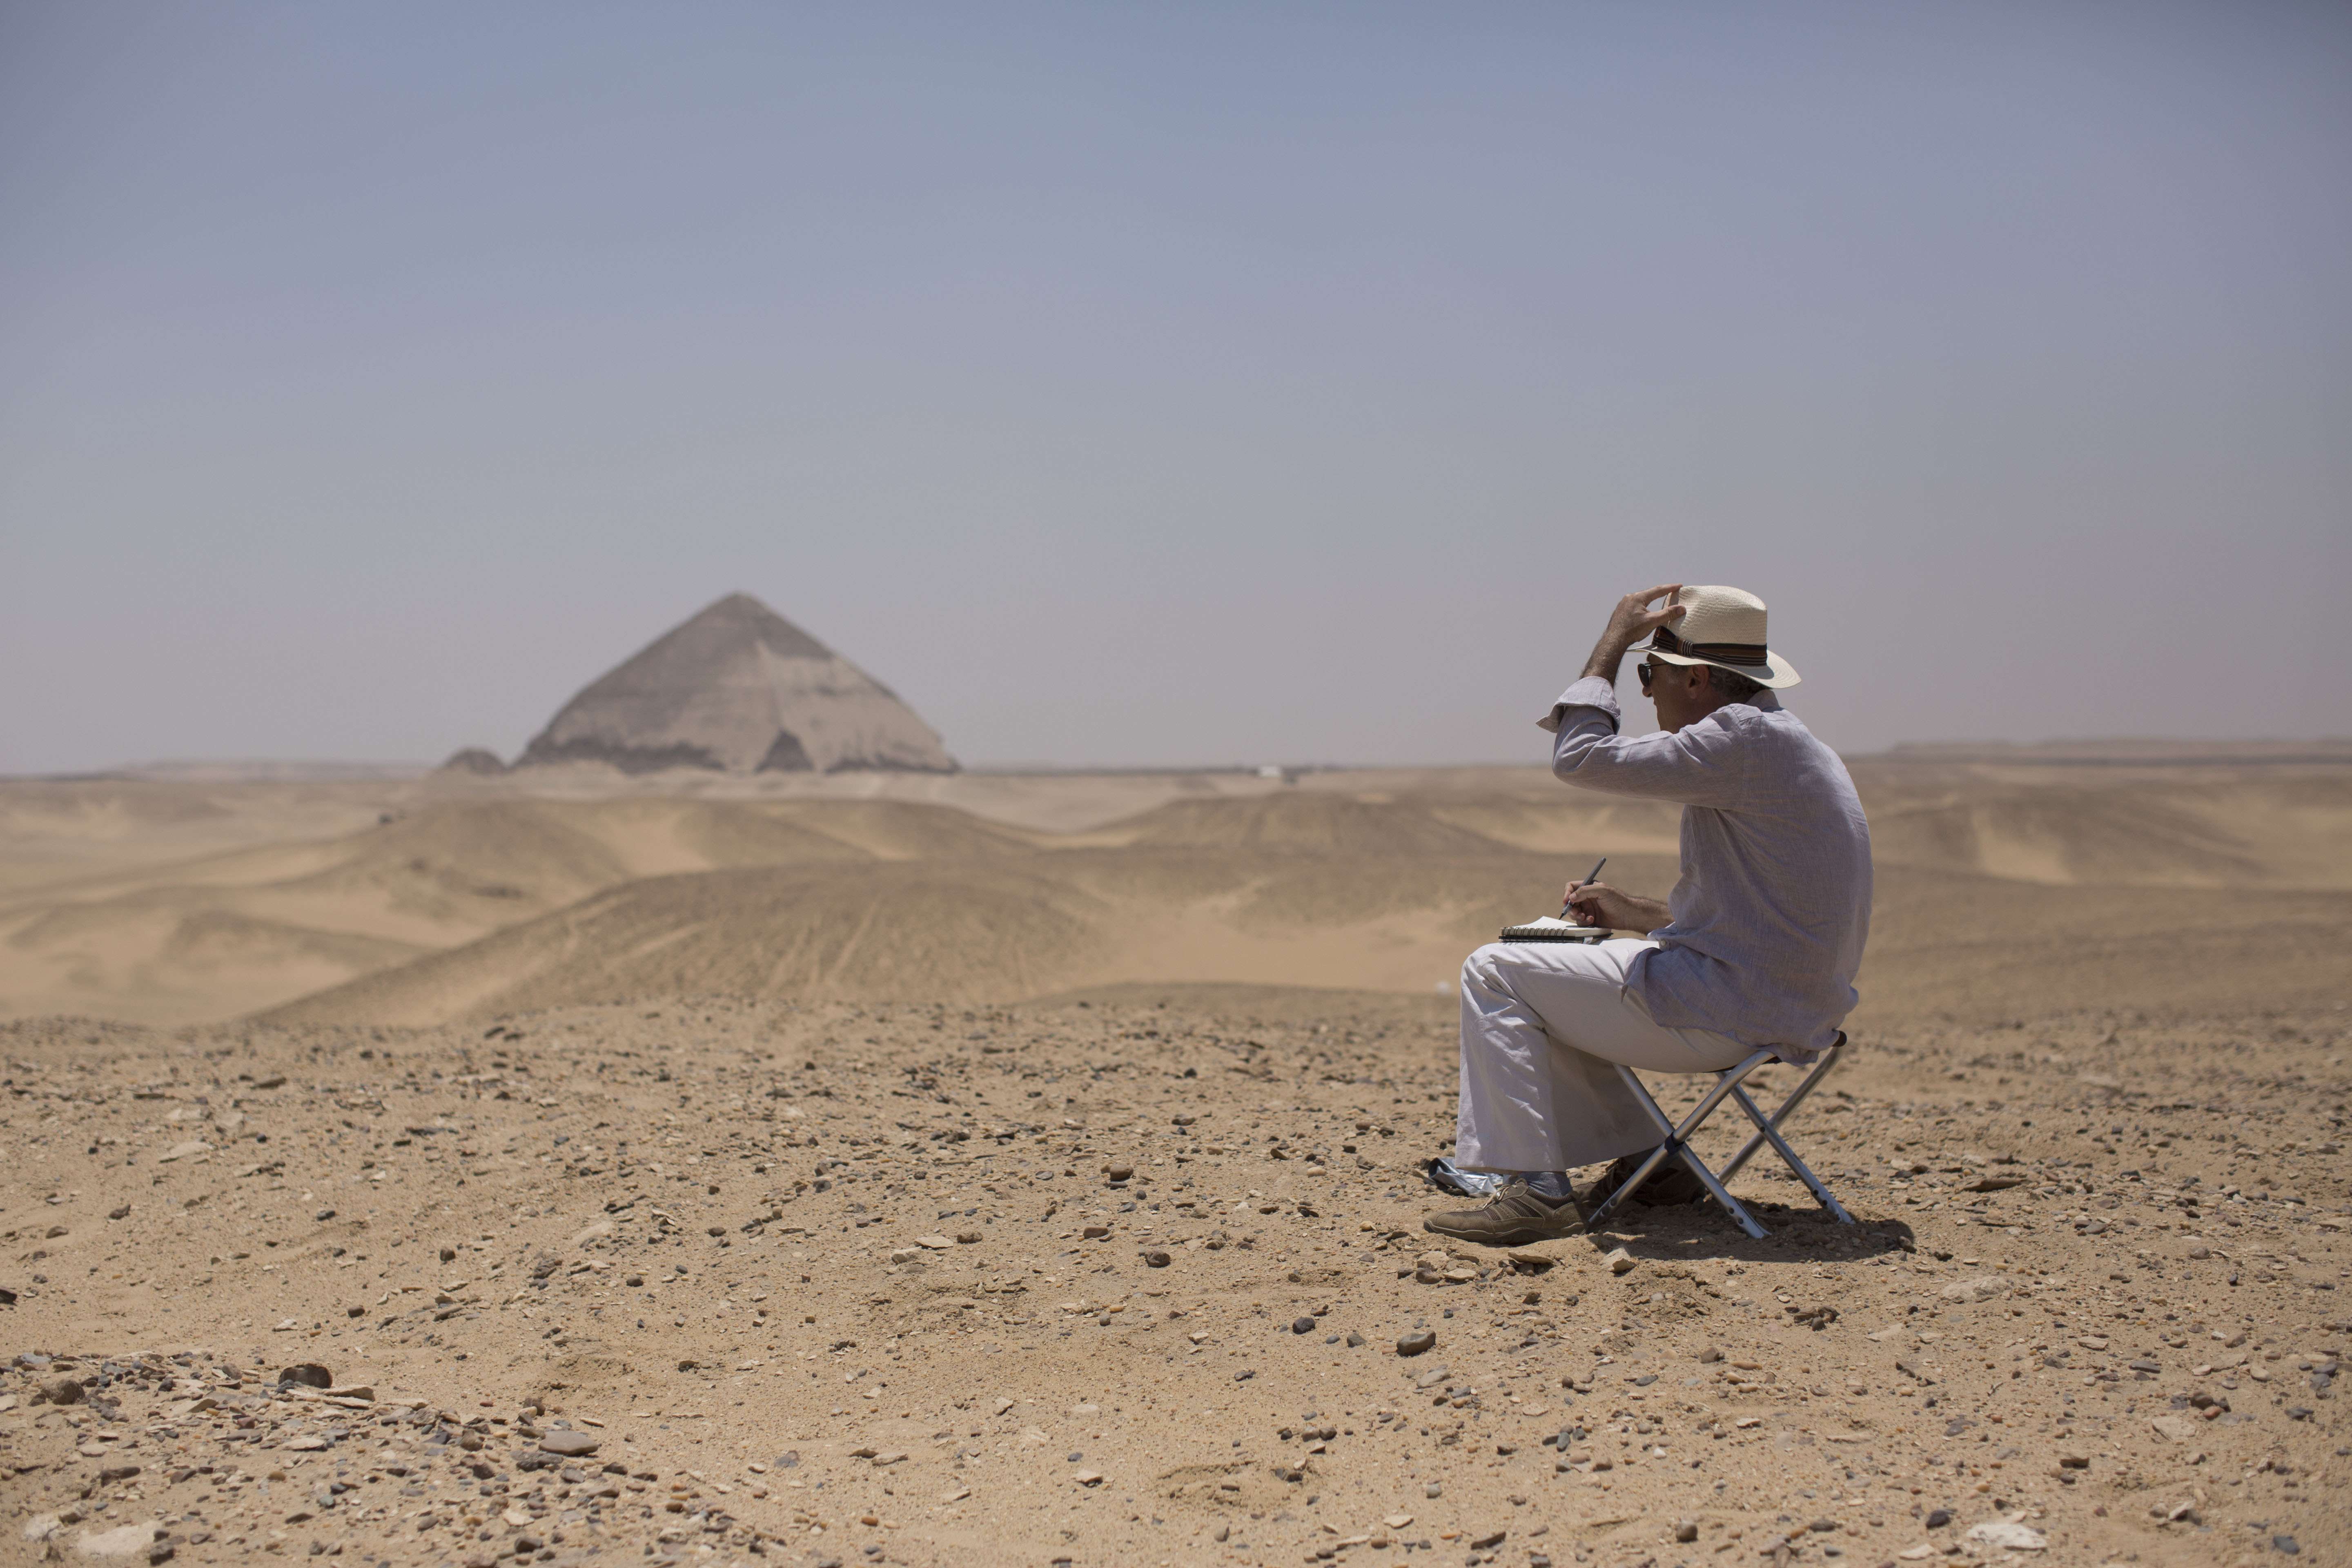 Египет летает ли россия. Туристы в Египте. Египет туризм. Путешественники в Египте. Египетские пирамиды с туристами.